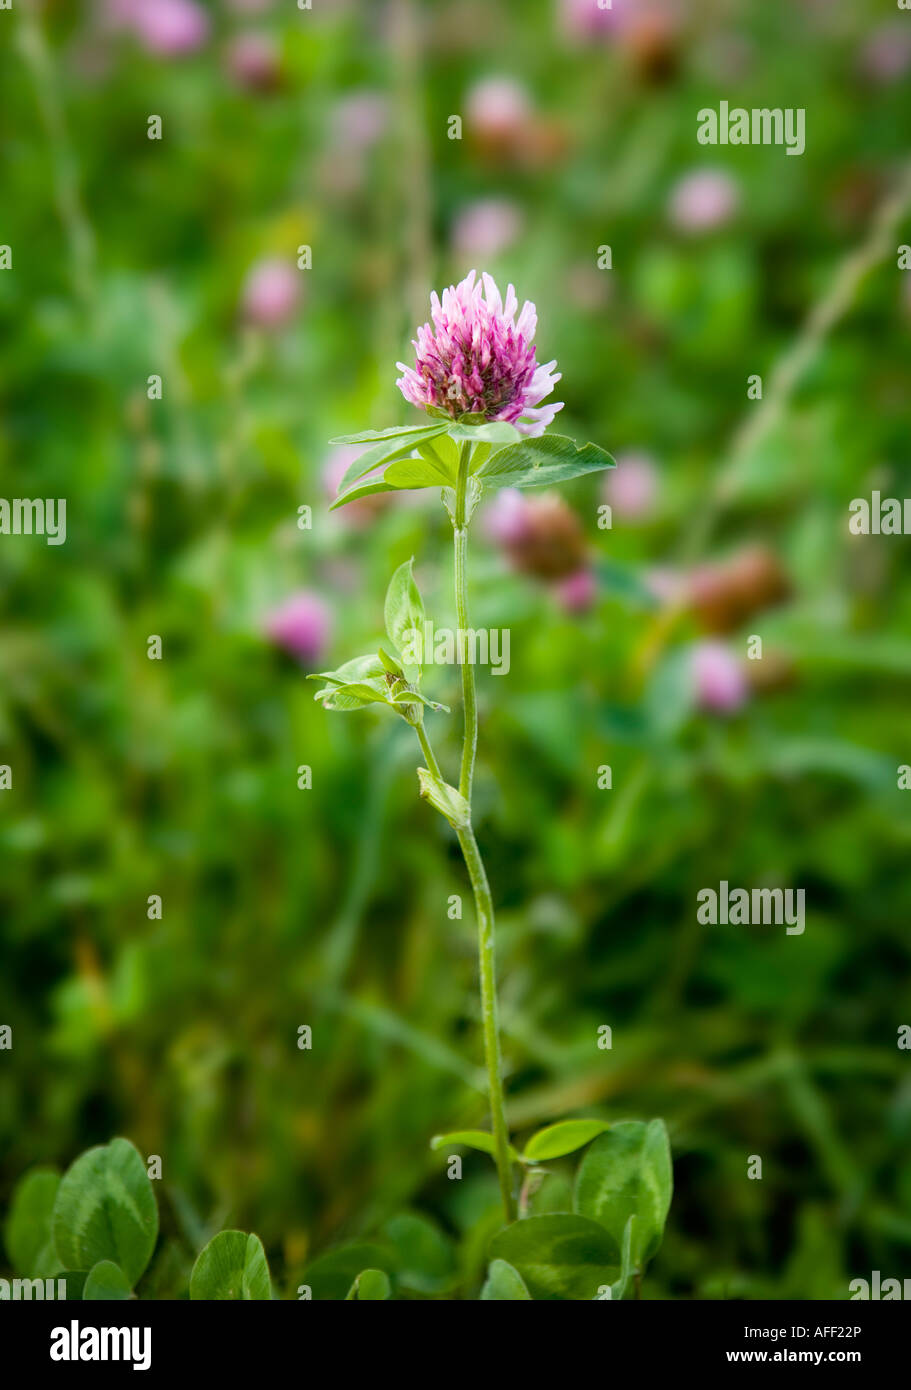 Flowering Clover Stock Photo